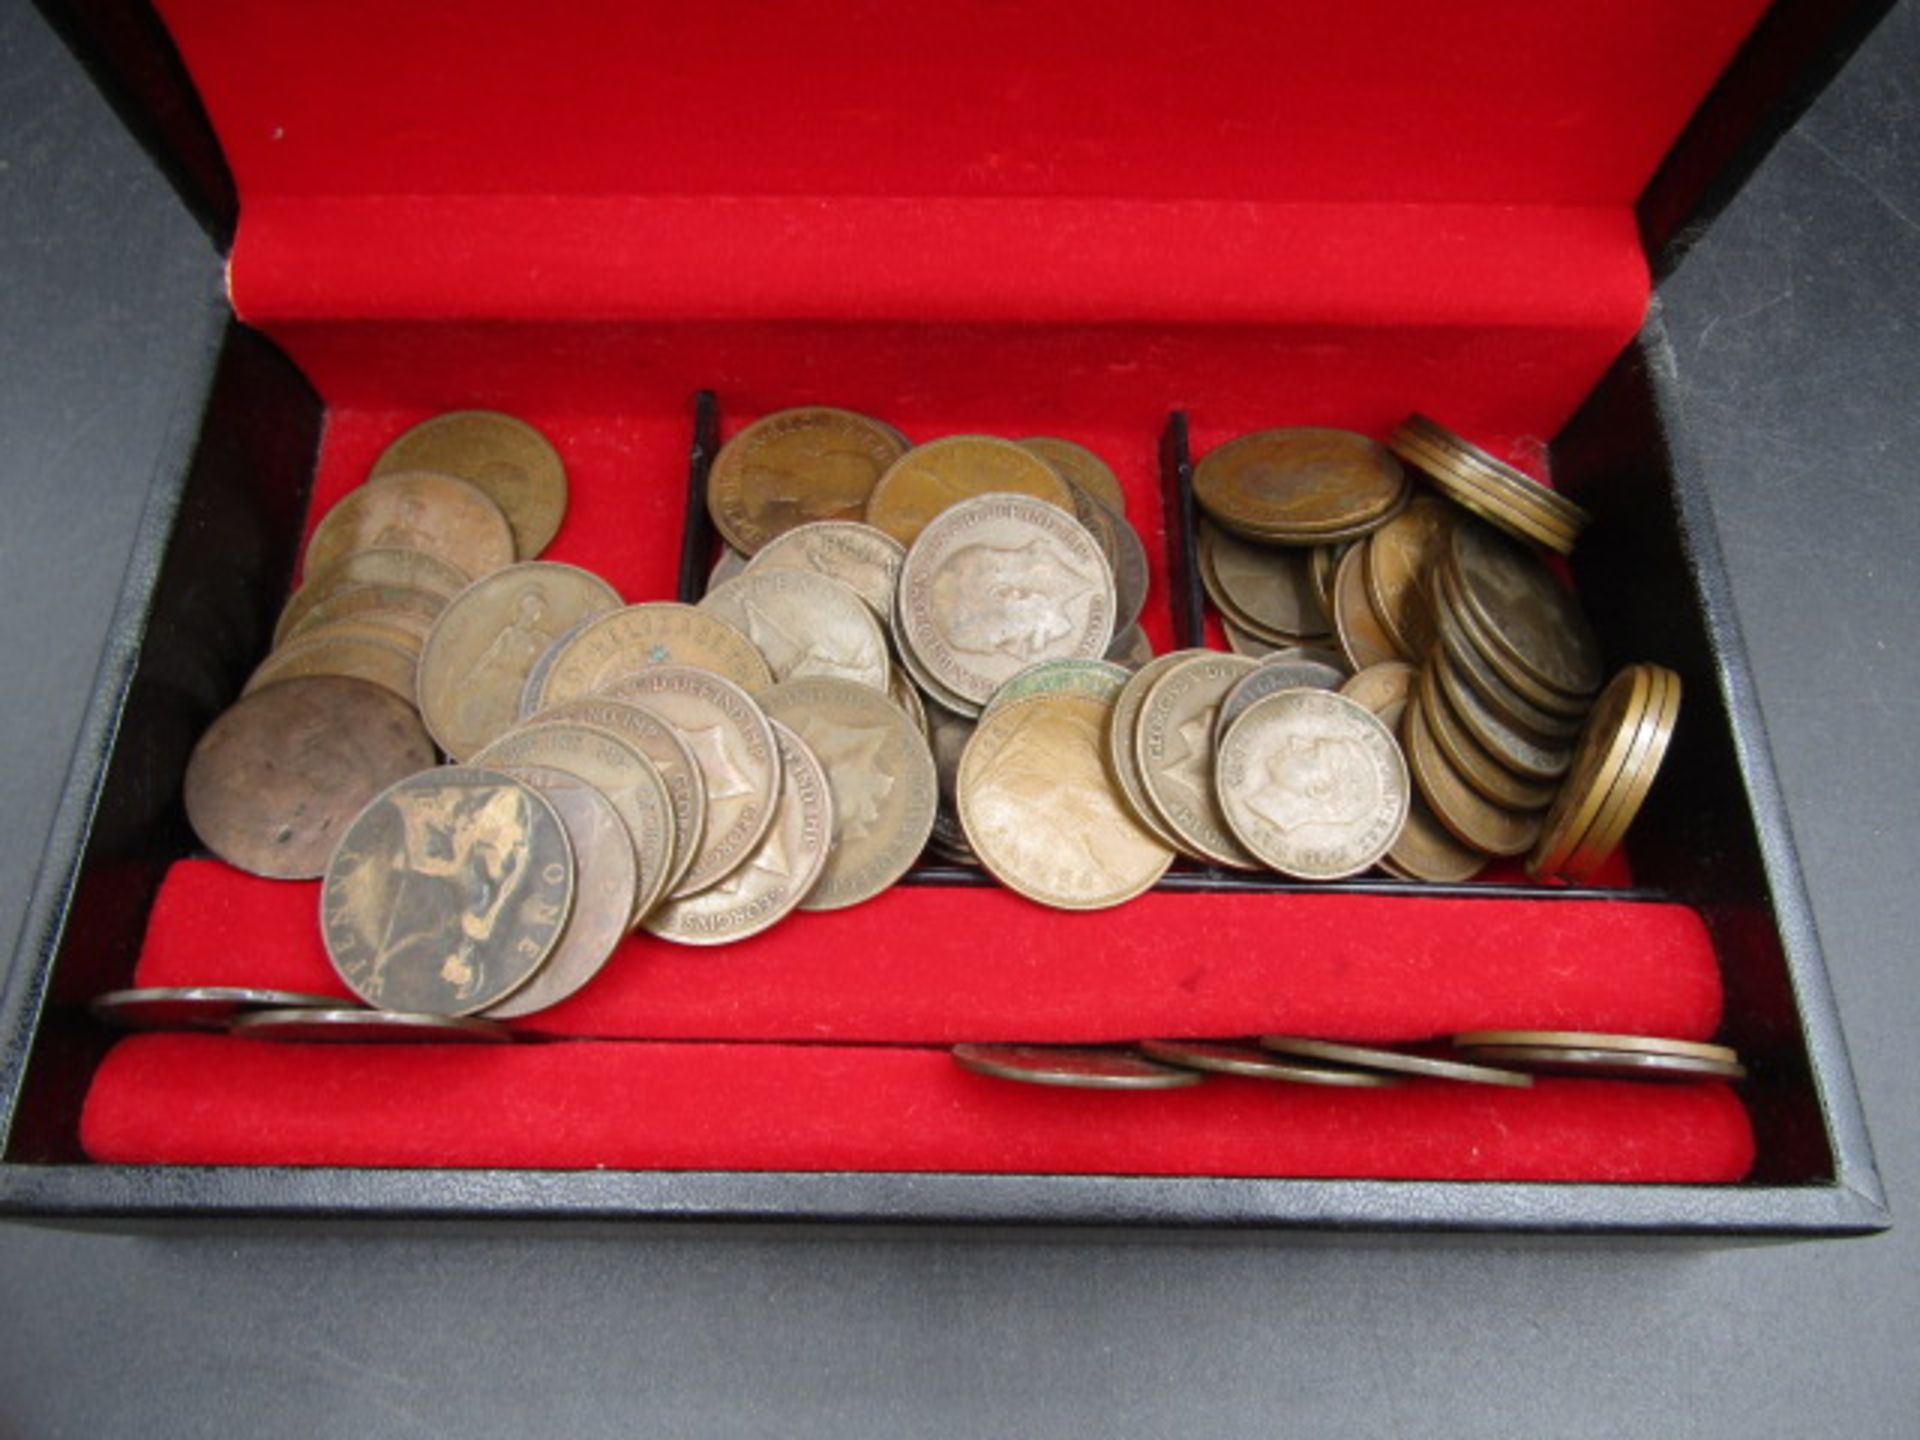 Victoria-QE11 pennies